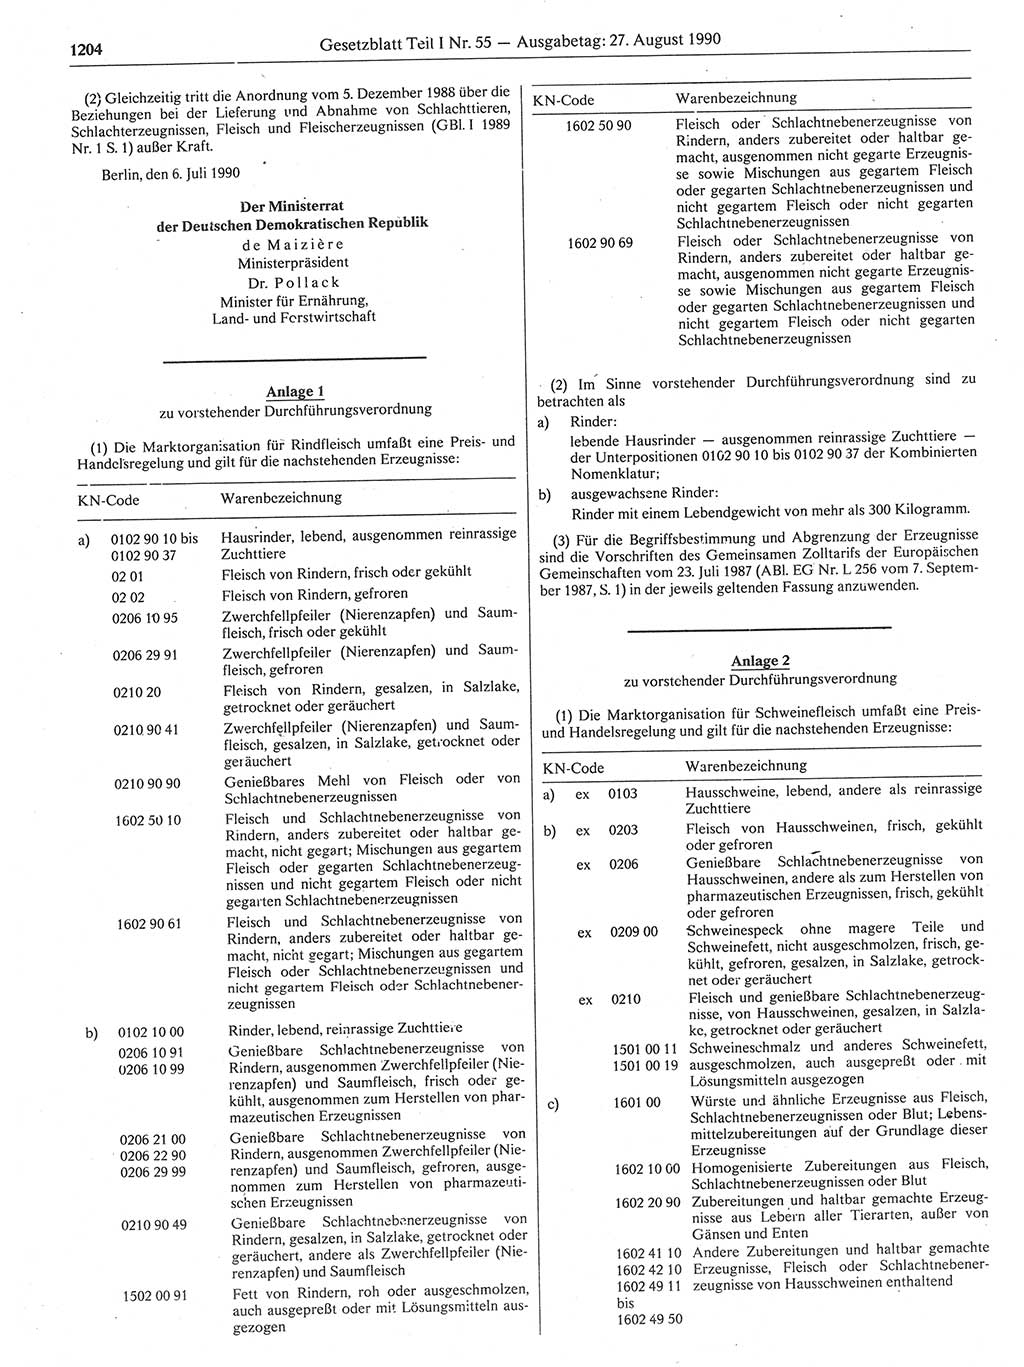 Gesetzblatt (GBl.) der Deutschen Demokratischen Republik (DDR) Teil Ⅰ 1990, Seite 1204 (GBl. DDR Ⅰ 1990, S. 1204)